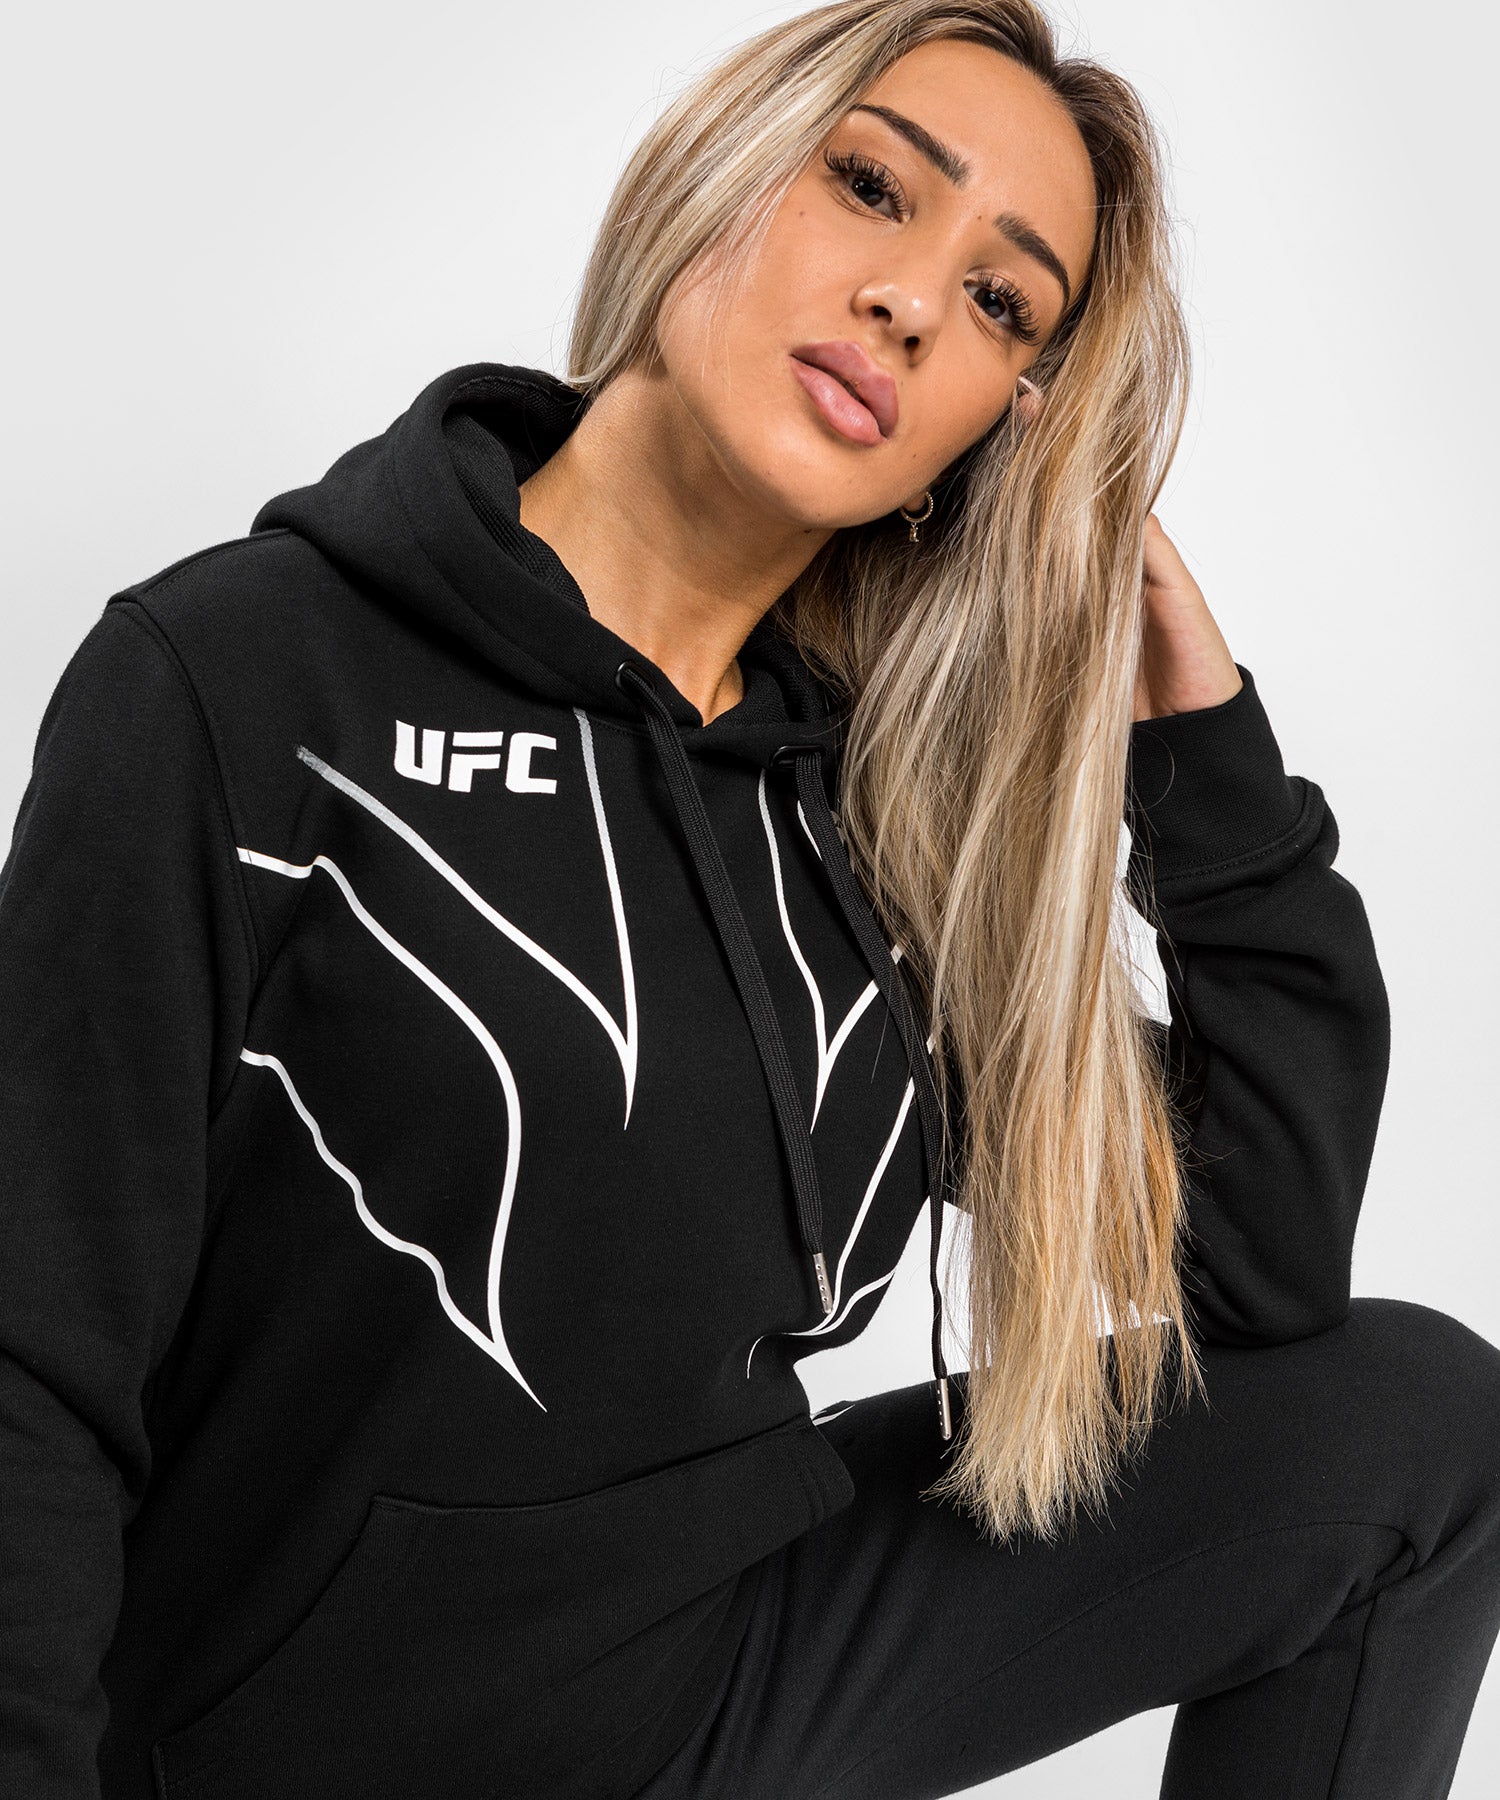 T-shirt Femme UFC Venum Fight Night 2.0 Replica - Noir